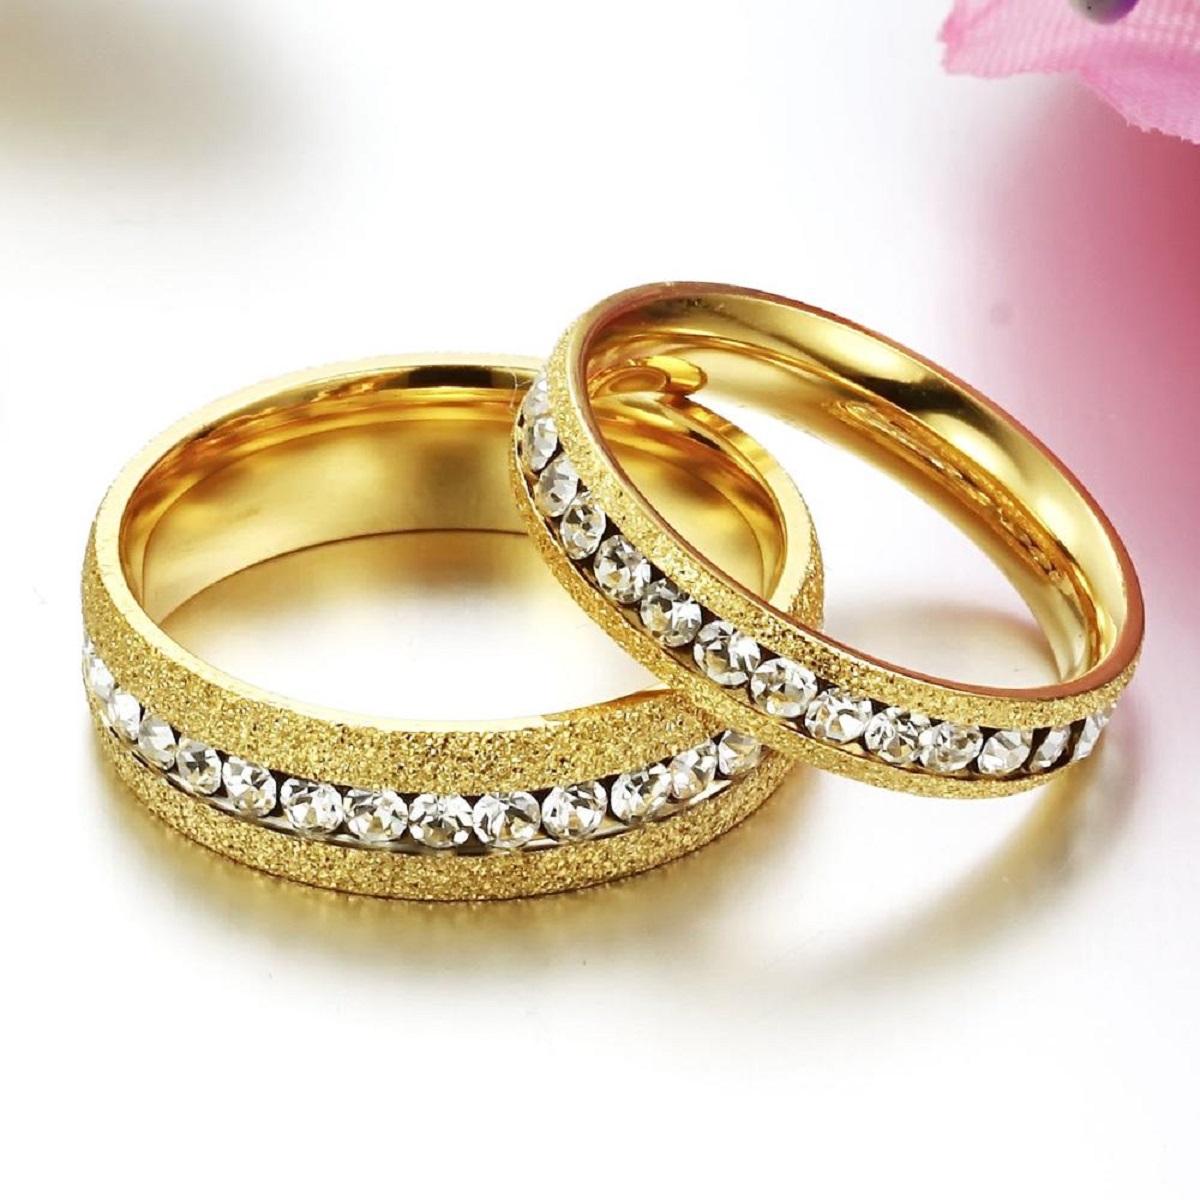 Customise your ring - Lebrusan Studio